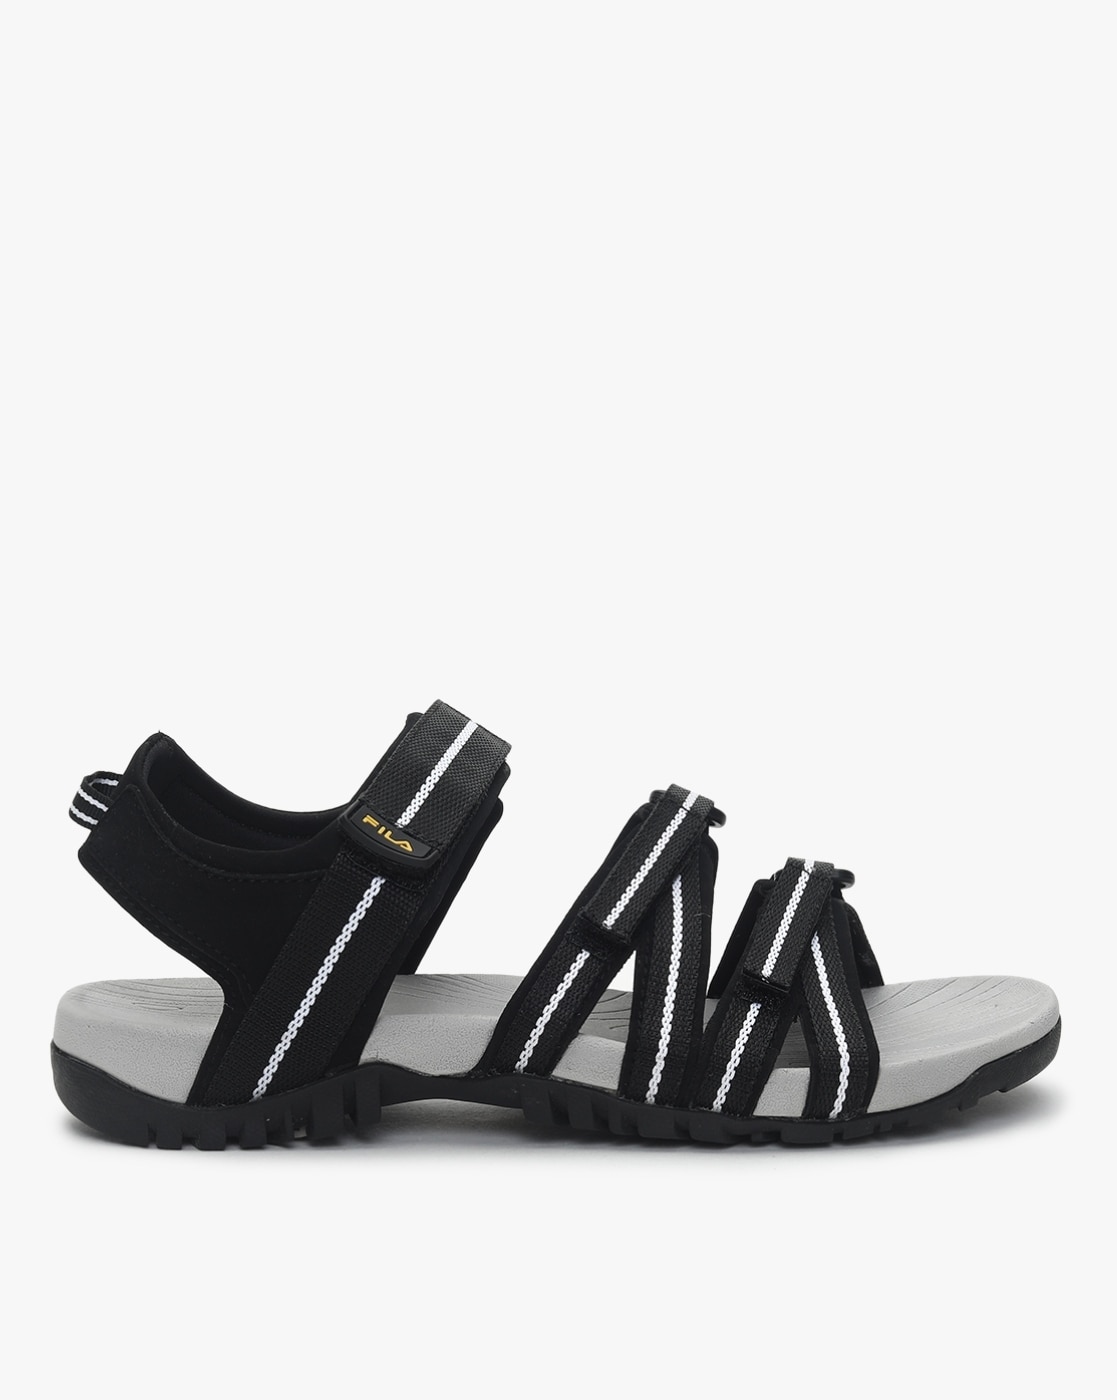 Fila Men's Slip On Low Black Slide Sandals Size 10 #Fila #Slides | Mens  slip on slippers, Mens slip on sandals, Sandals